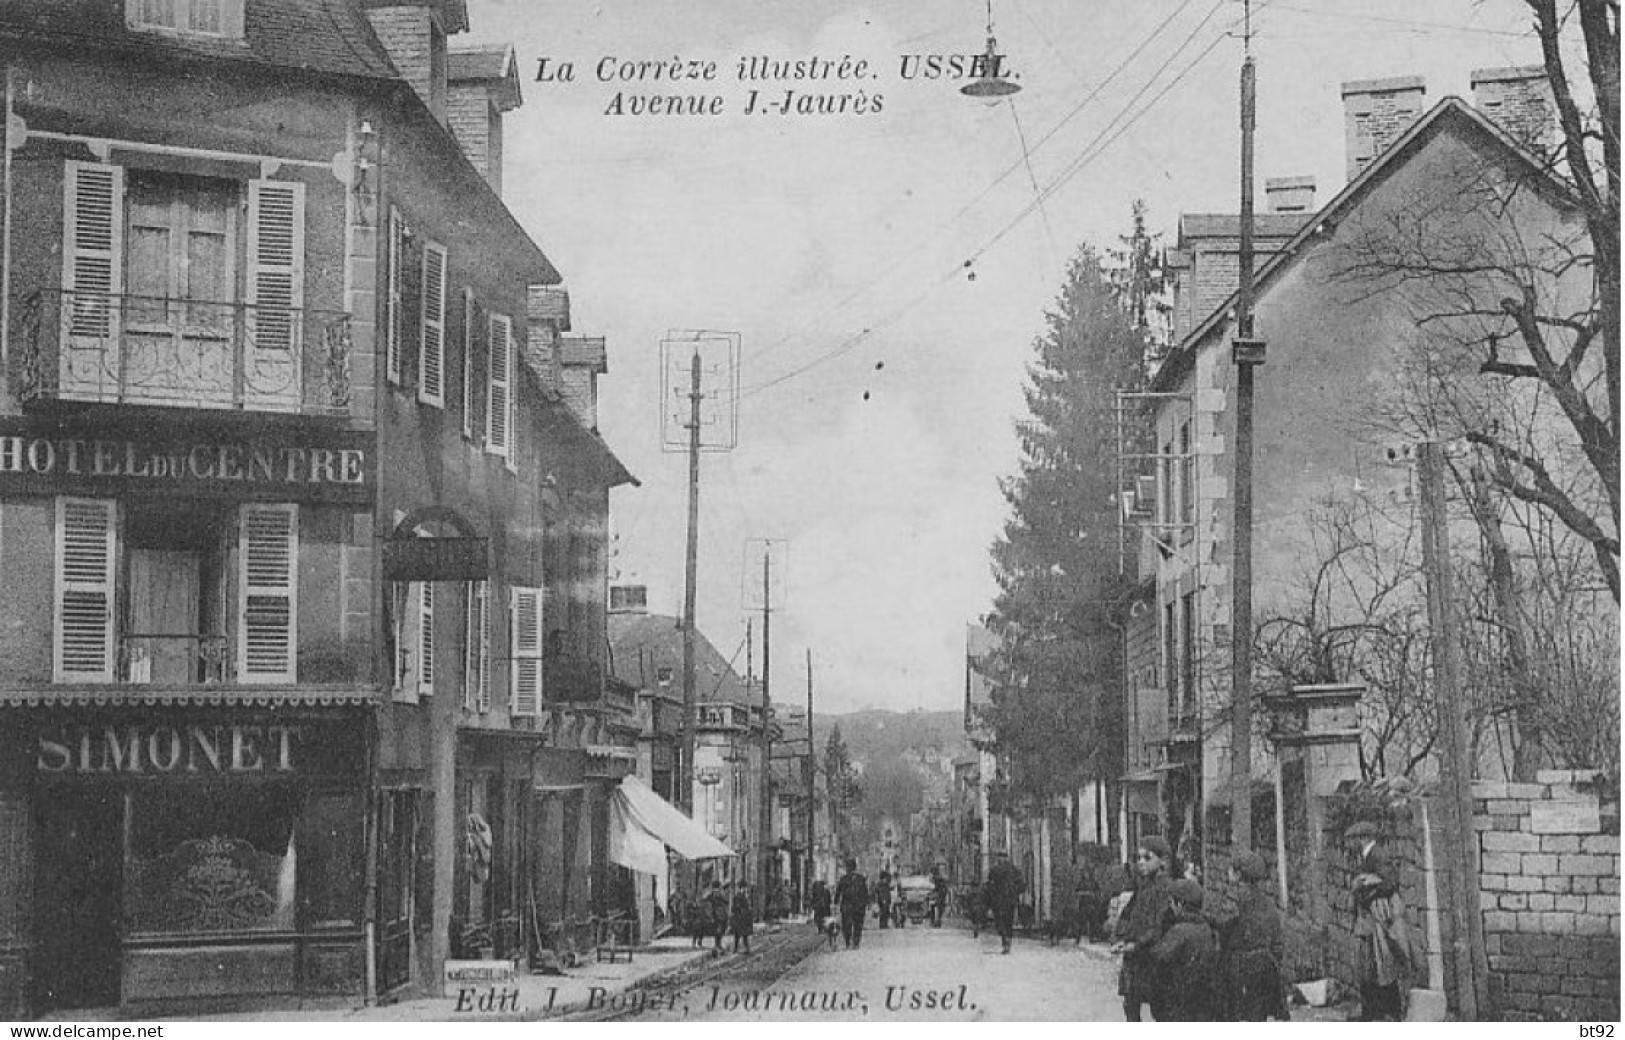 Lot de 11 cartes de la ville d' Ussel (Corrèze)